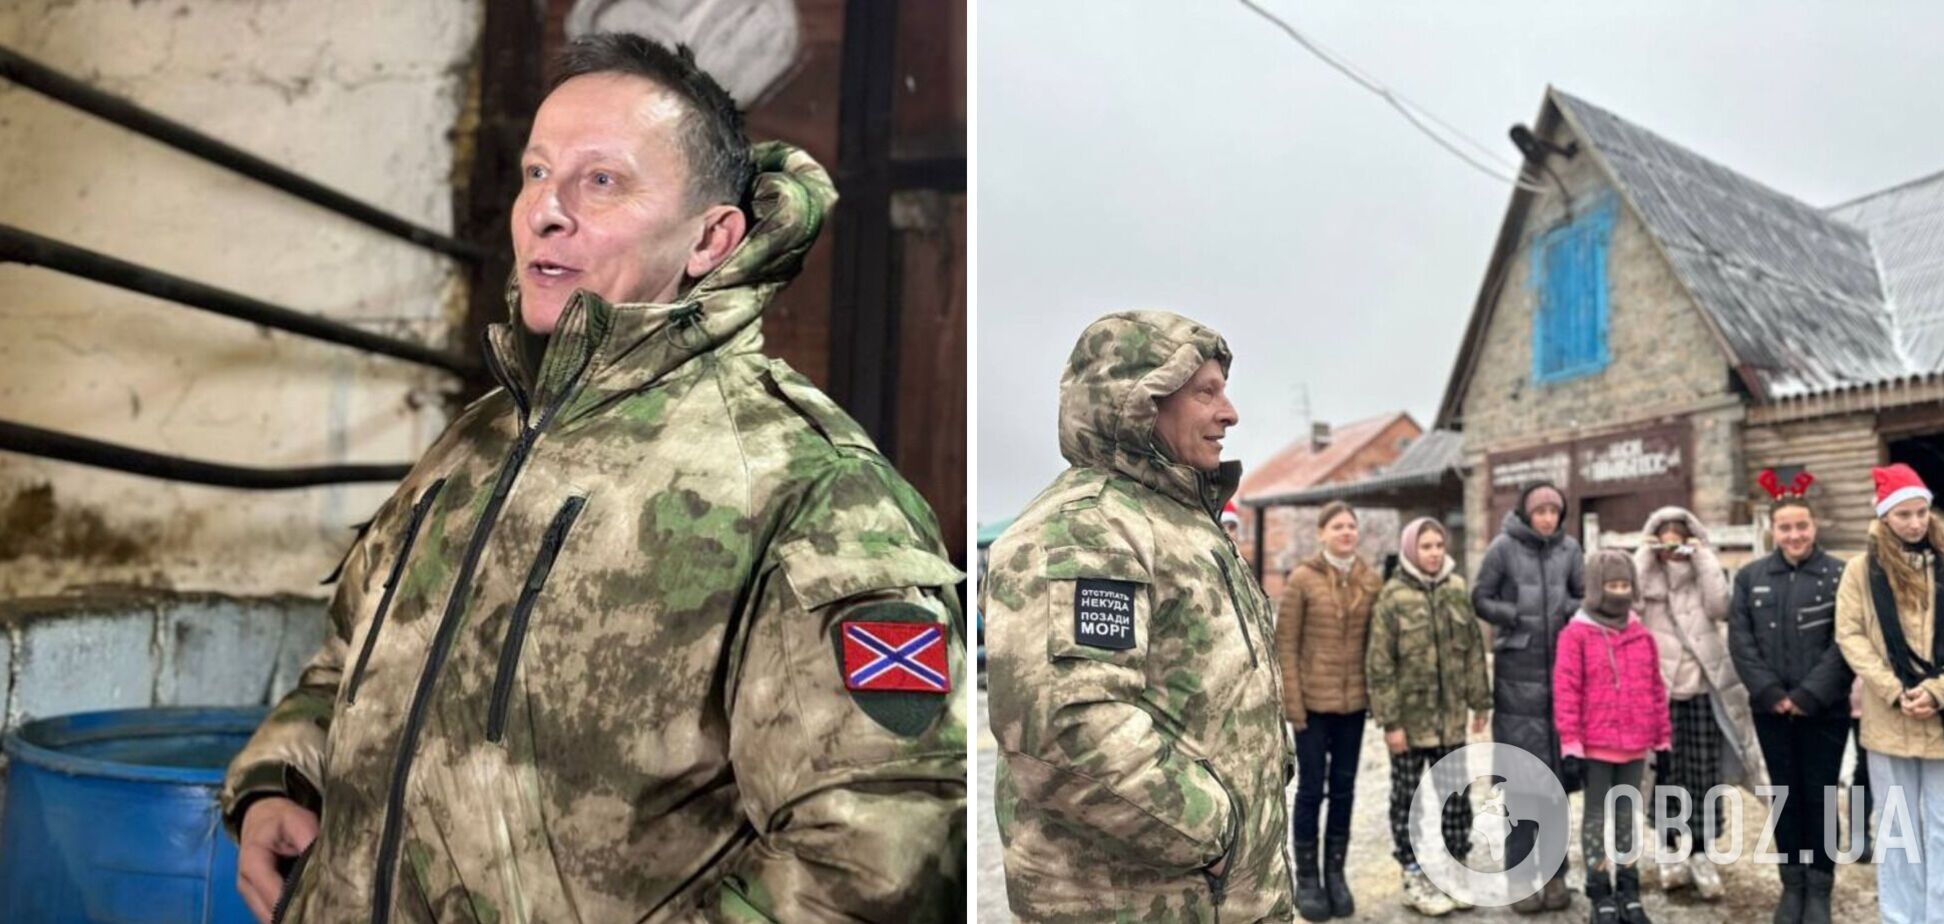 'Отступать некуда, позади морг': путинист Охлобыстин засветился на оккупированном Донбассе. Фото